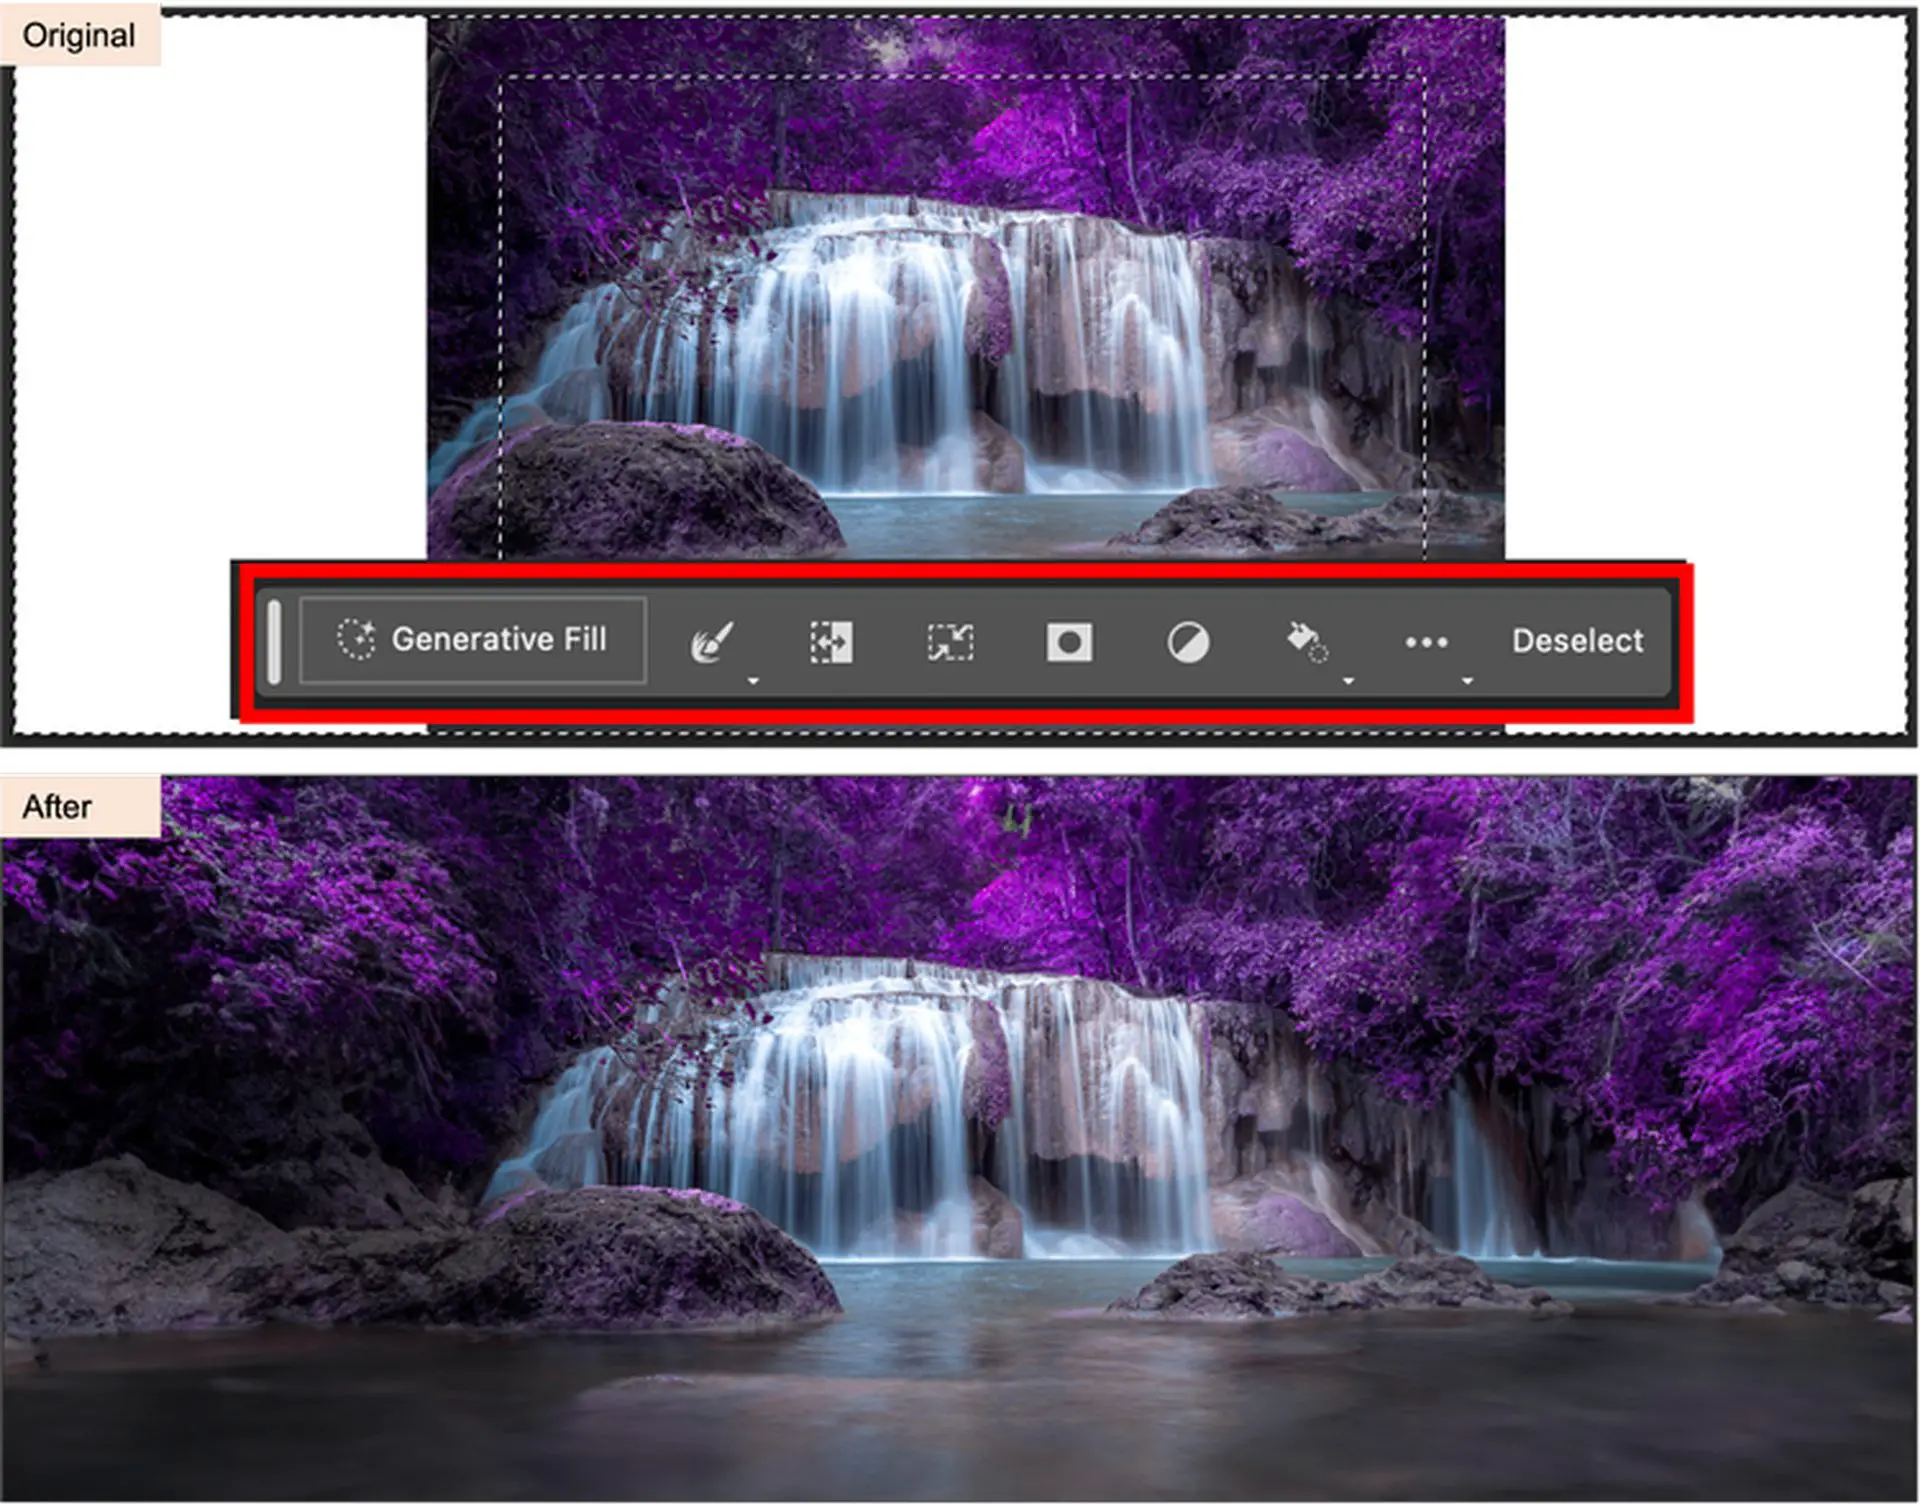 Adobe Photoshop AI: leer hoe u generatieve vulling gebruikt in Photoshop en ontdek de functies van generatieve vulling van Photoshop. Blijf lezen en ontdekken!